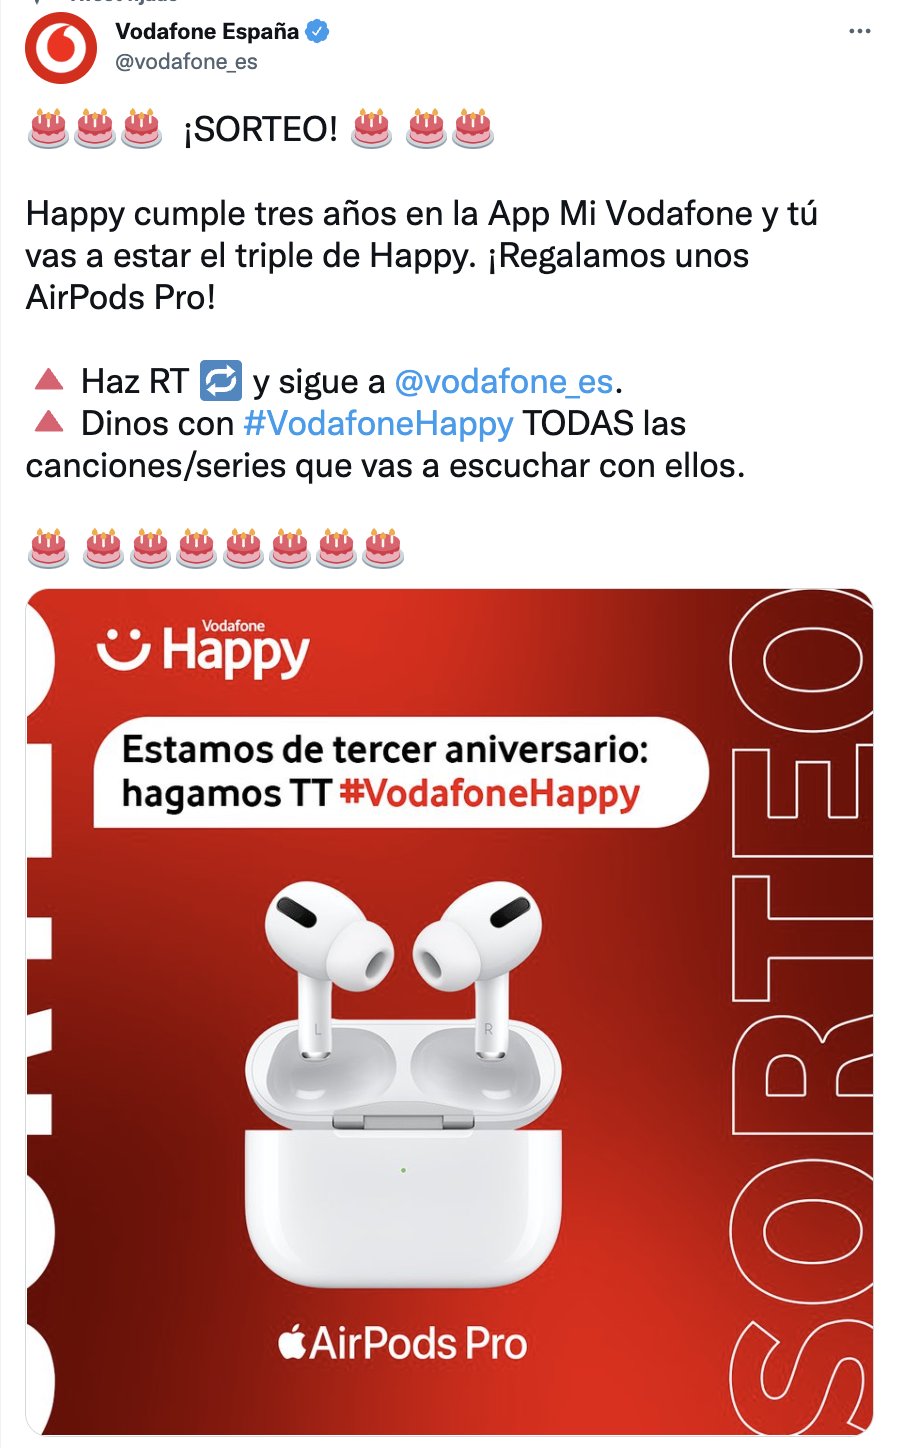 exégesis no Olla de crack Vodafone España on Twitter: "🎂🎂🎂 ¡SORTEO! 🎂 🎂🎂 Happy cumple tres años  en la App Mi Vodafone y tú vas a estar el triple de Happy. ¡Regalamos unos  AirPods Pro! 🔺 Haz